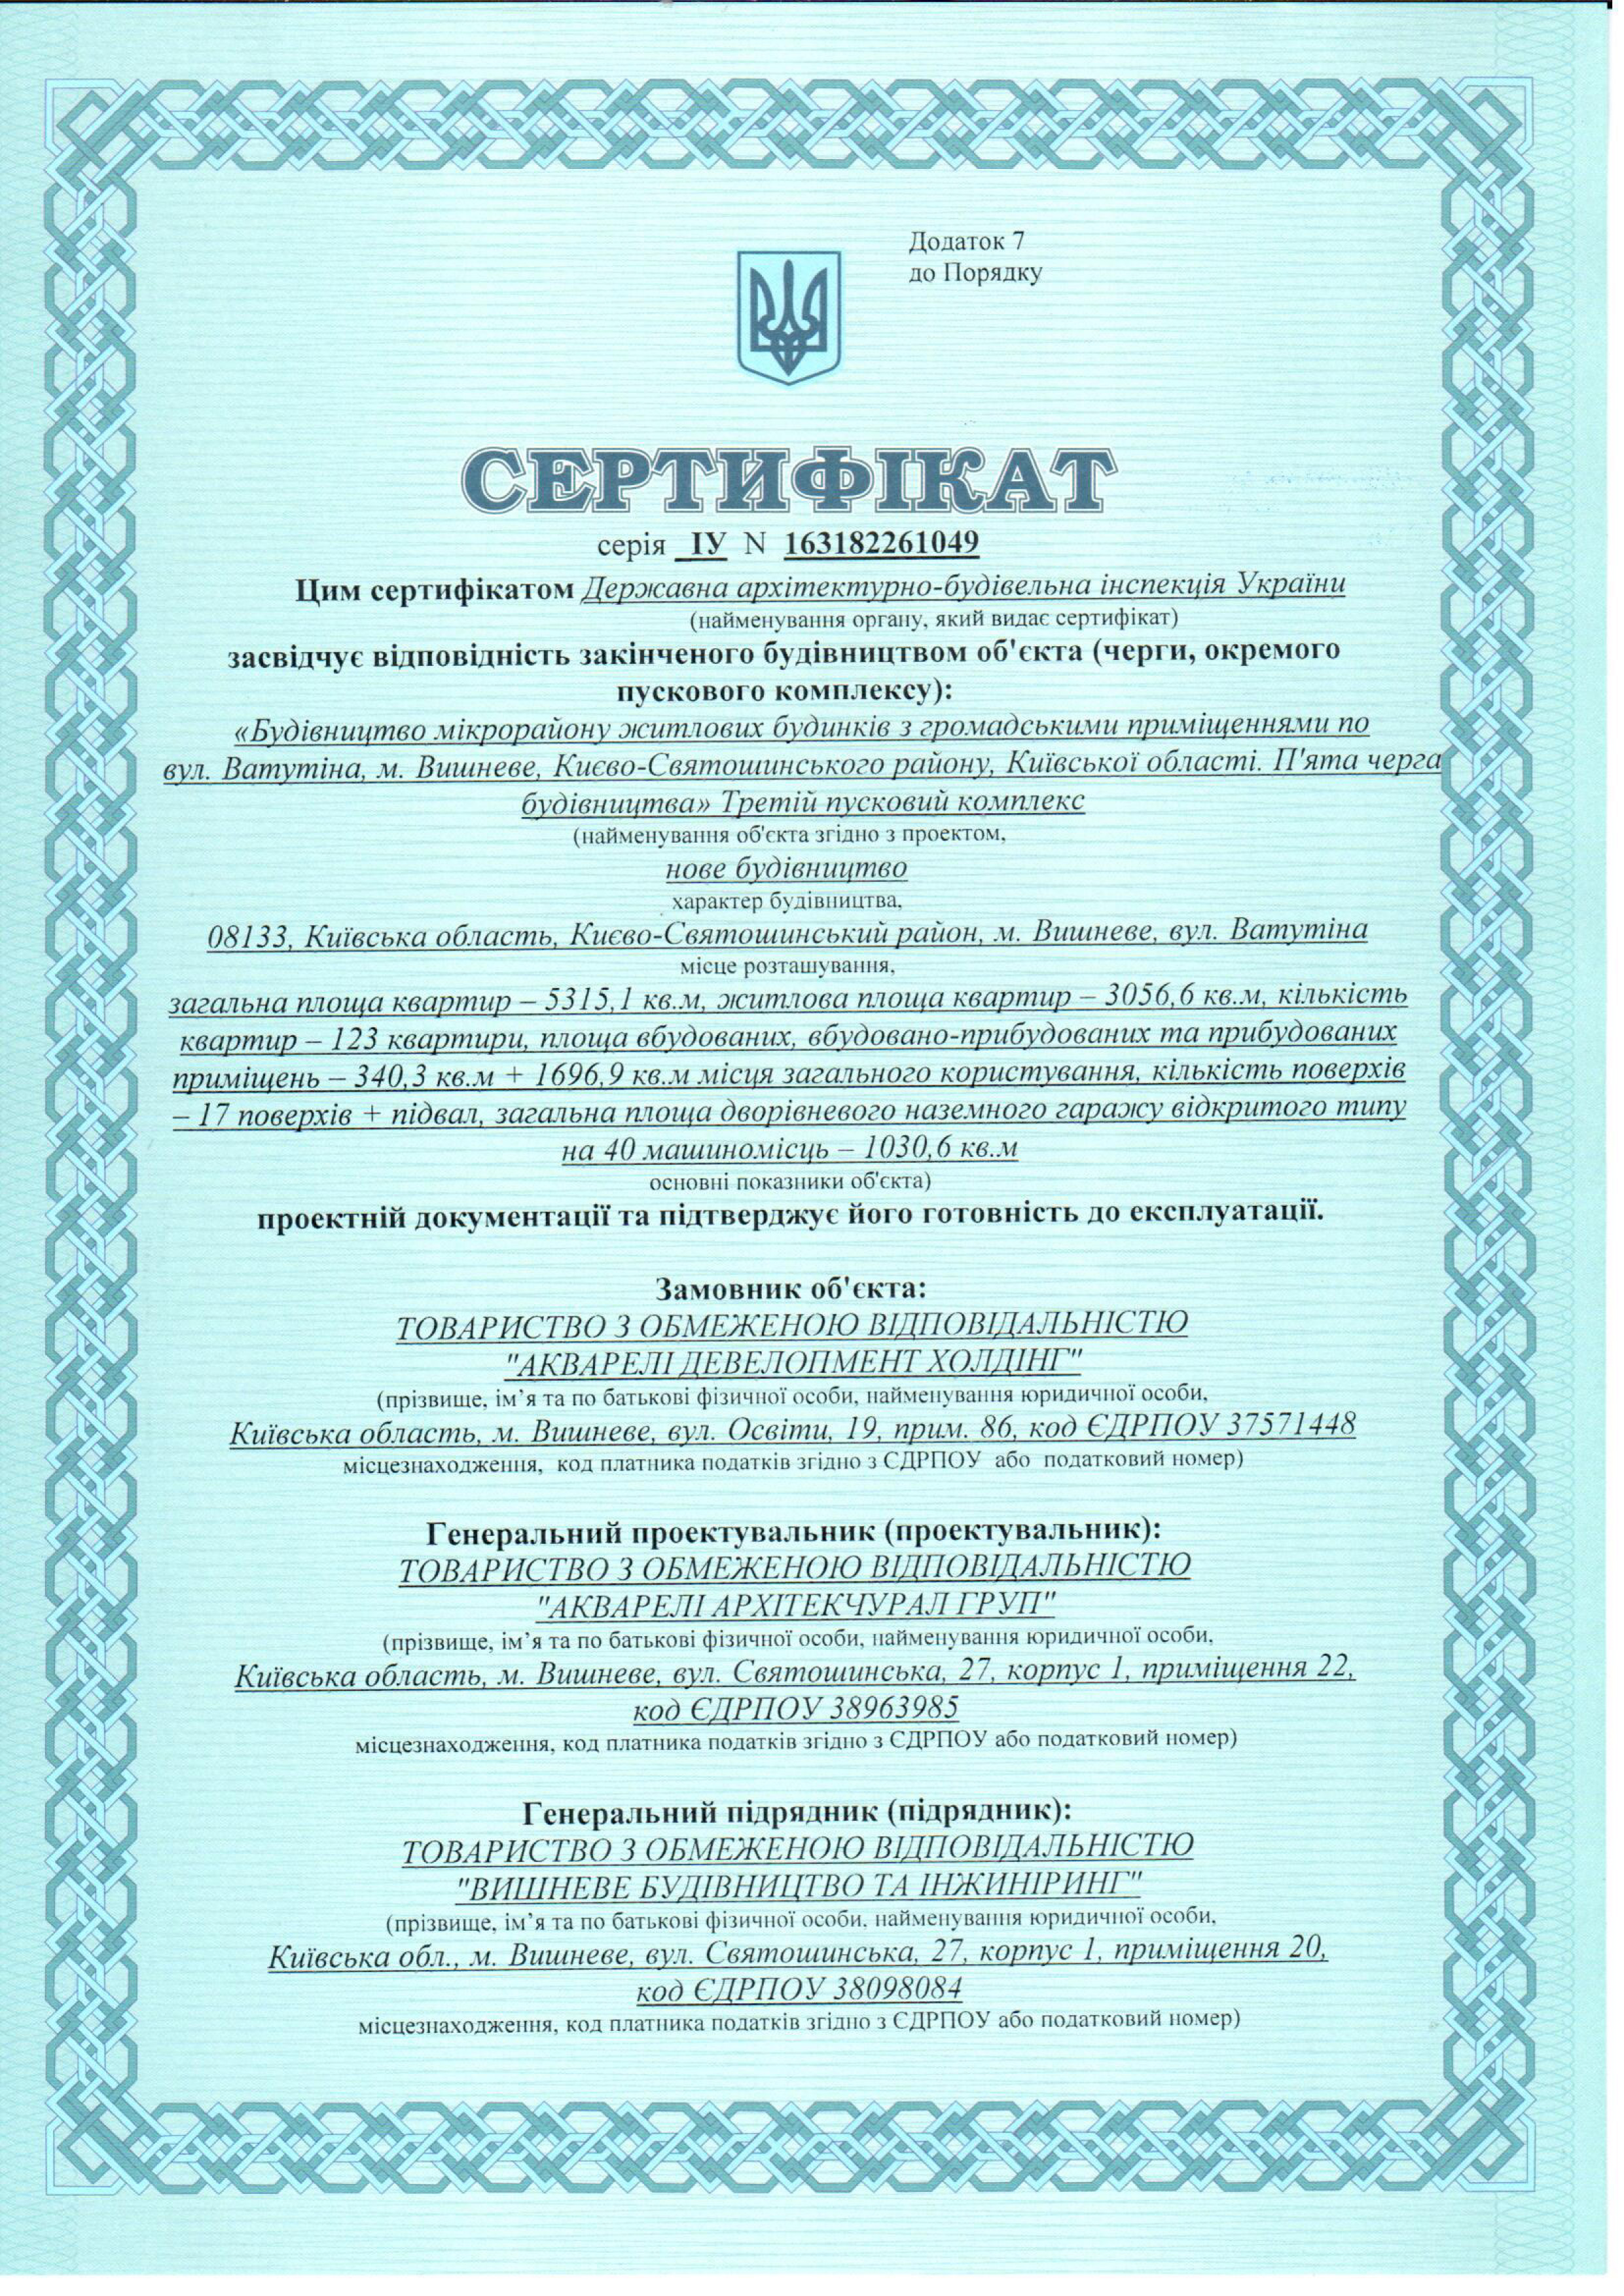 Сертификат о готовности дома В7 IV очереди строительства